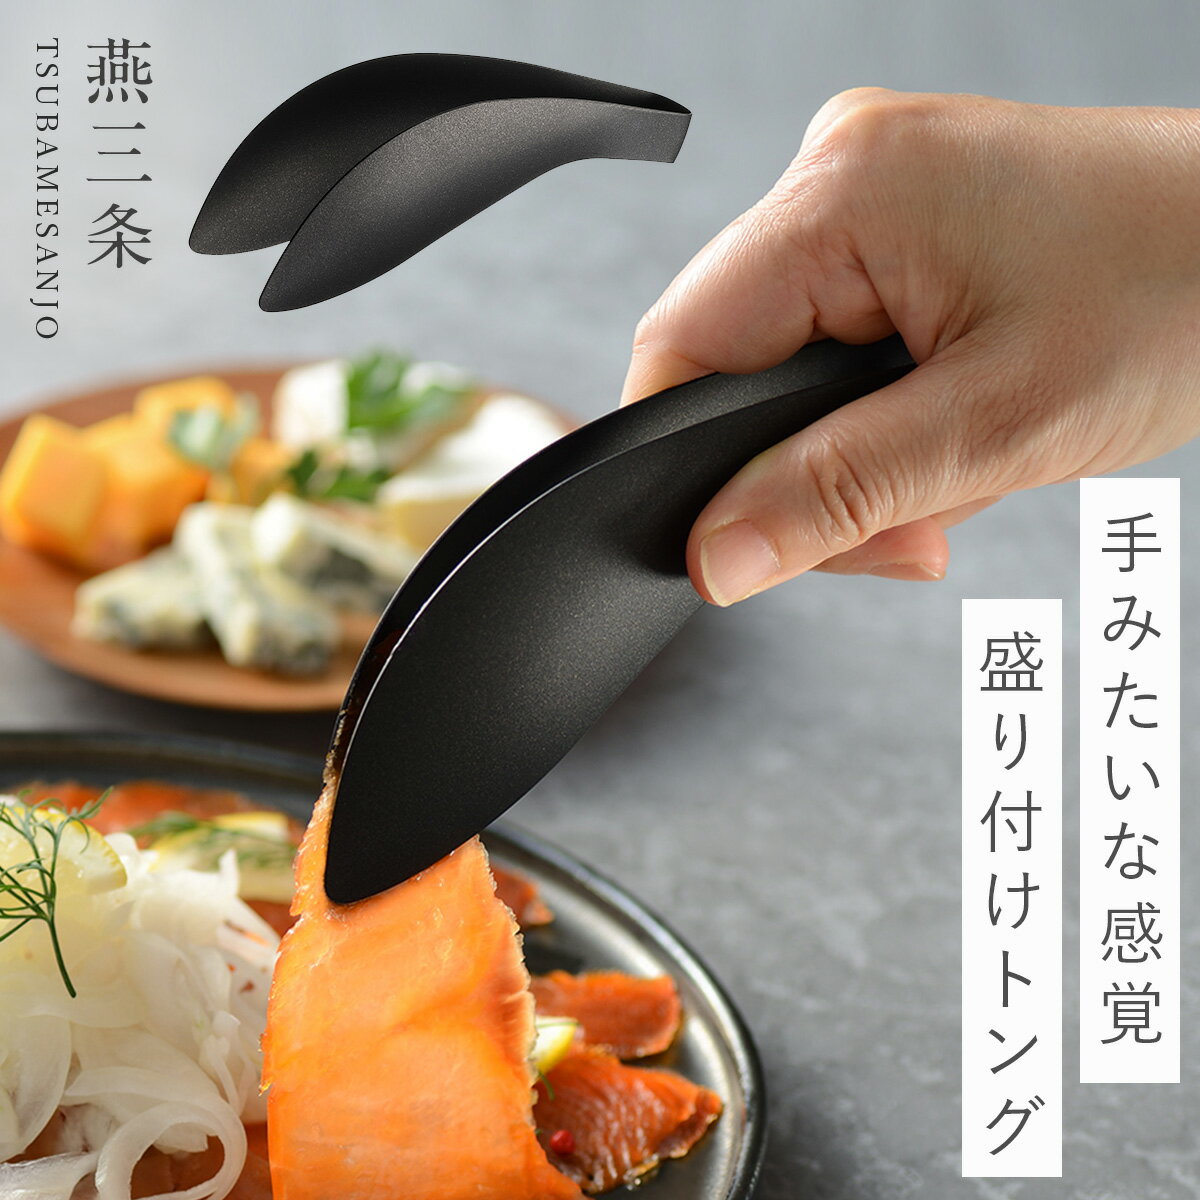 燕三条 トング ミニ ステンレス ミニトング 14.7cm 日本製 キッチン 調理器具 トリワケトング ブラック